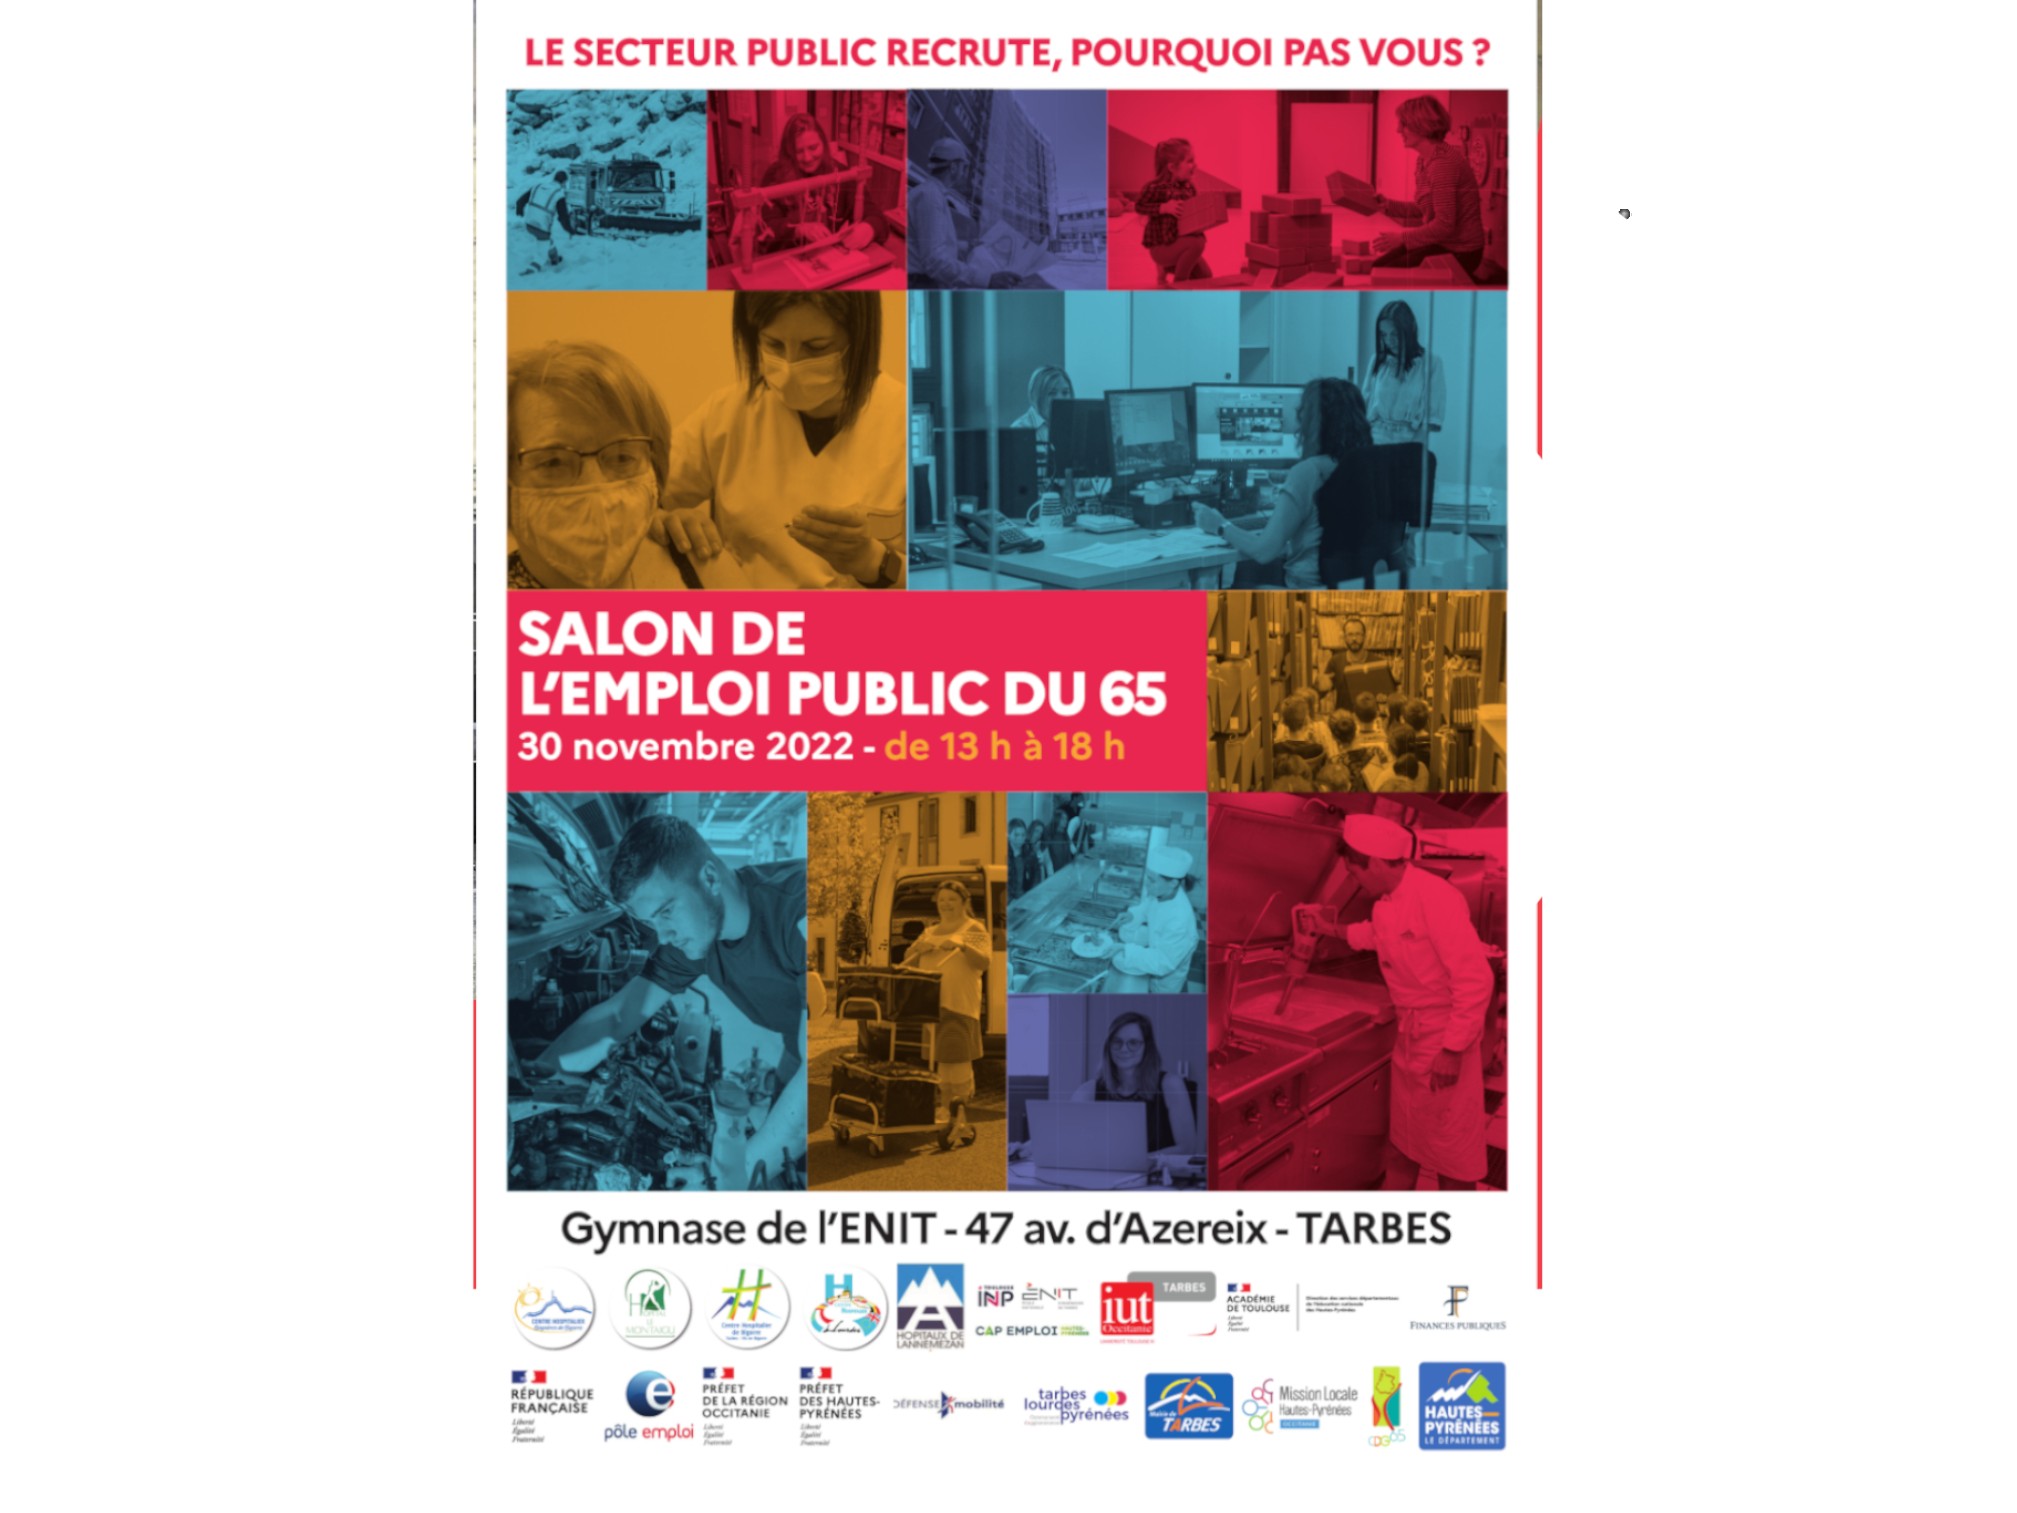 SALON DE L'EMPLOI PUBLIC DU 65